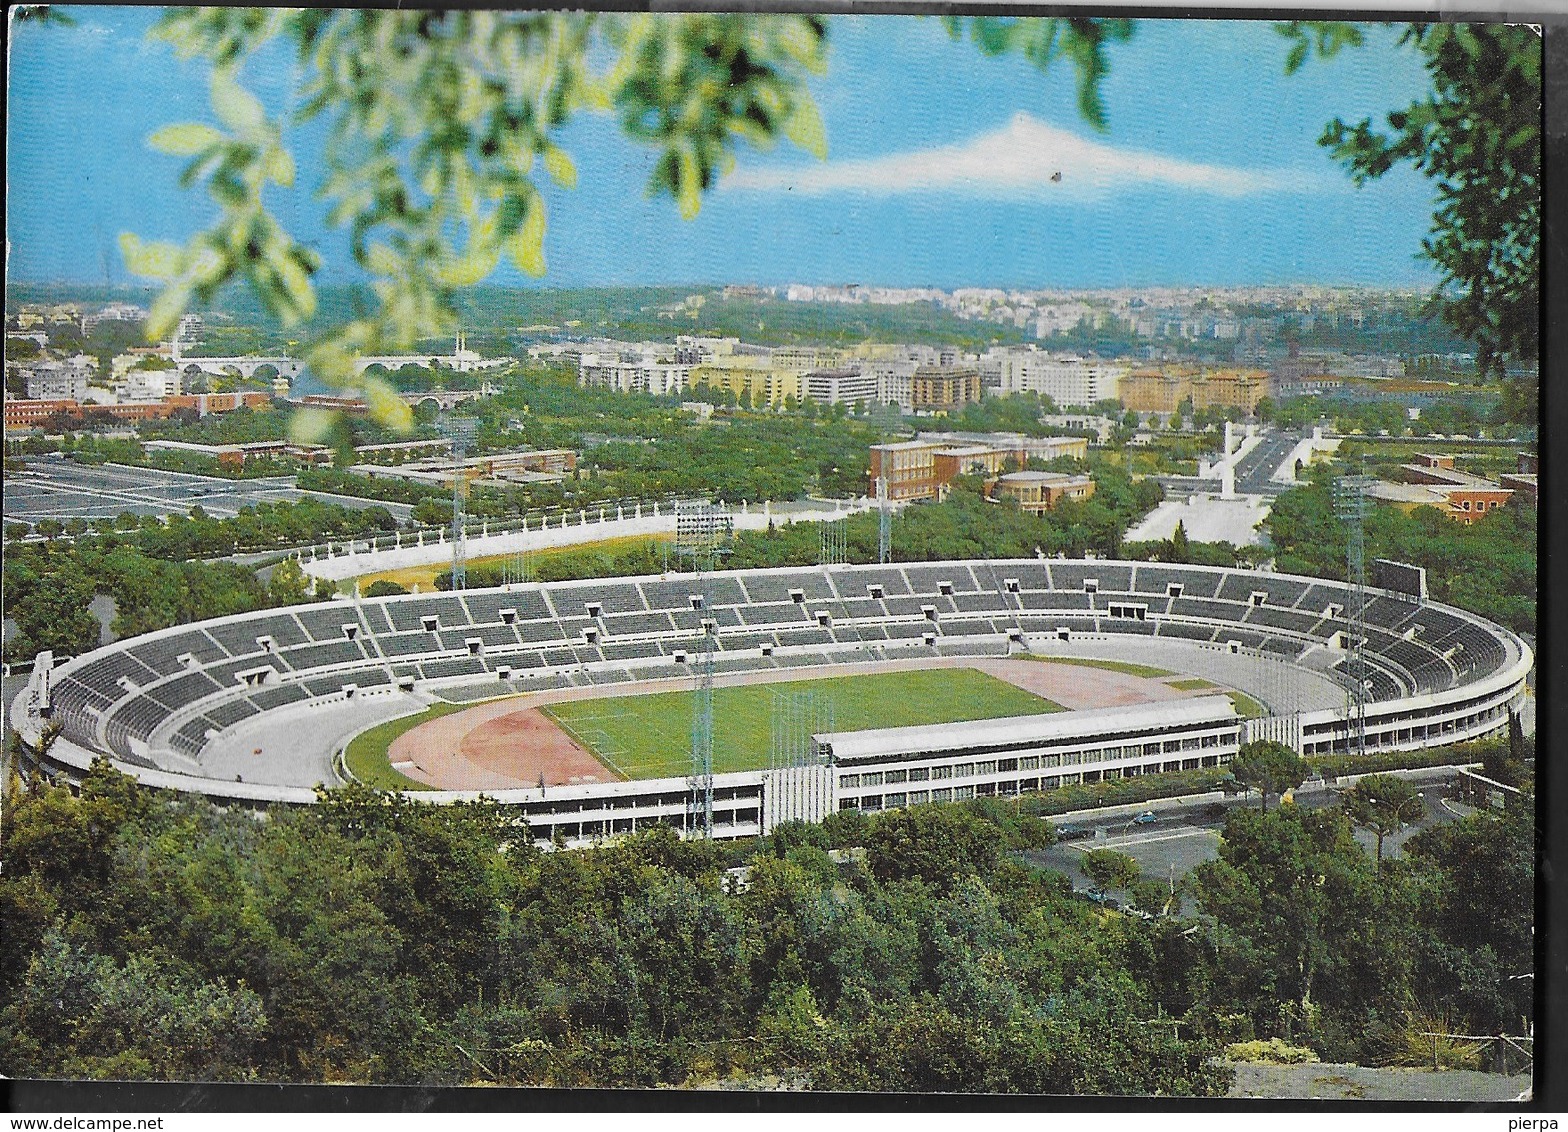 ROMA - STADIO OLIMPICO - VIAGGIATA 1975 FRANCOBOLLO ASPORTATO - Stadi